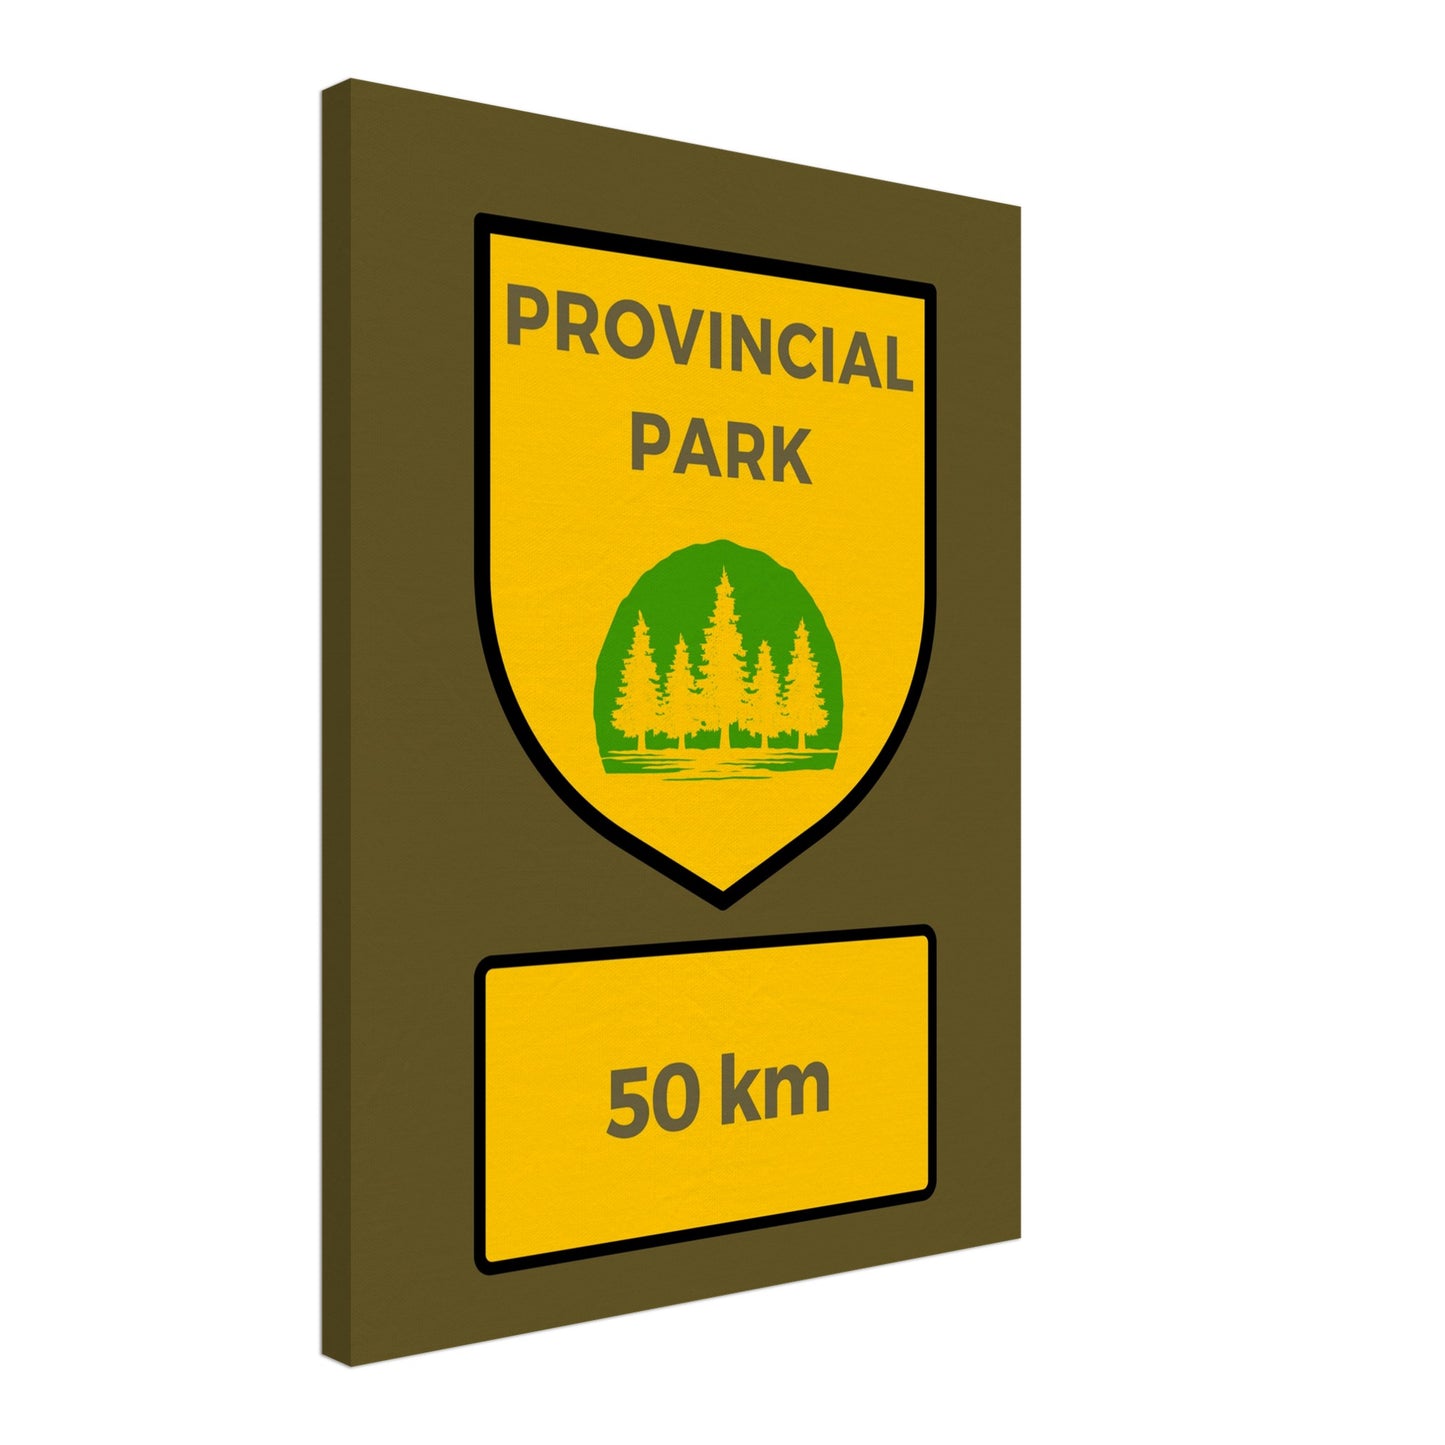 Provincial Park Sign